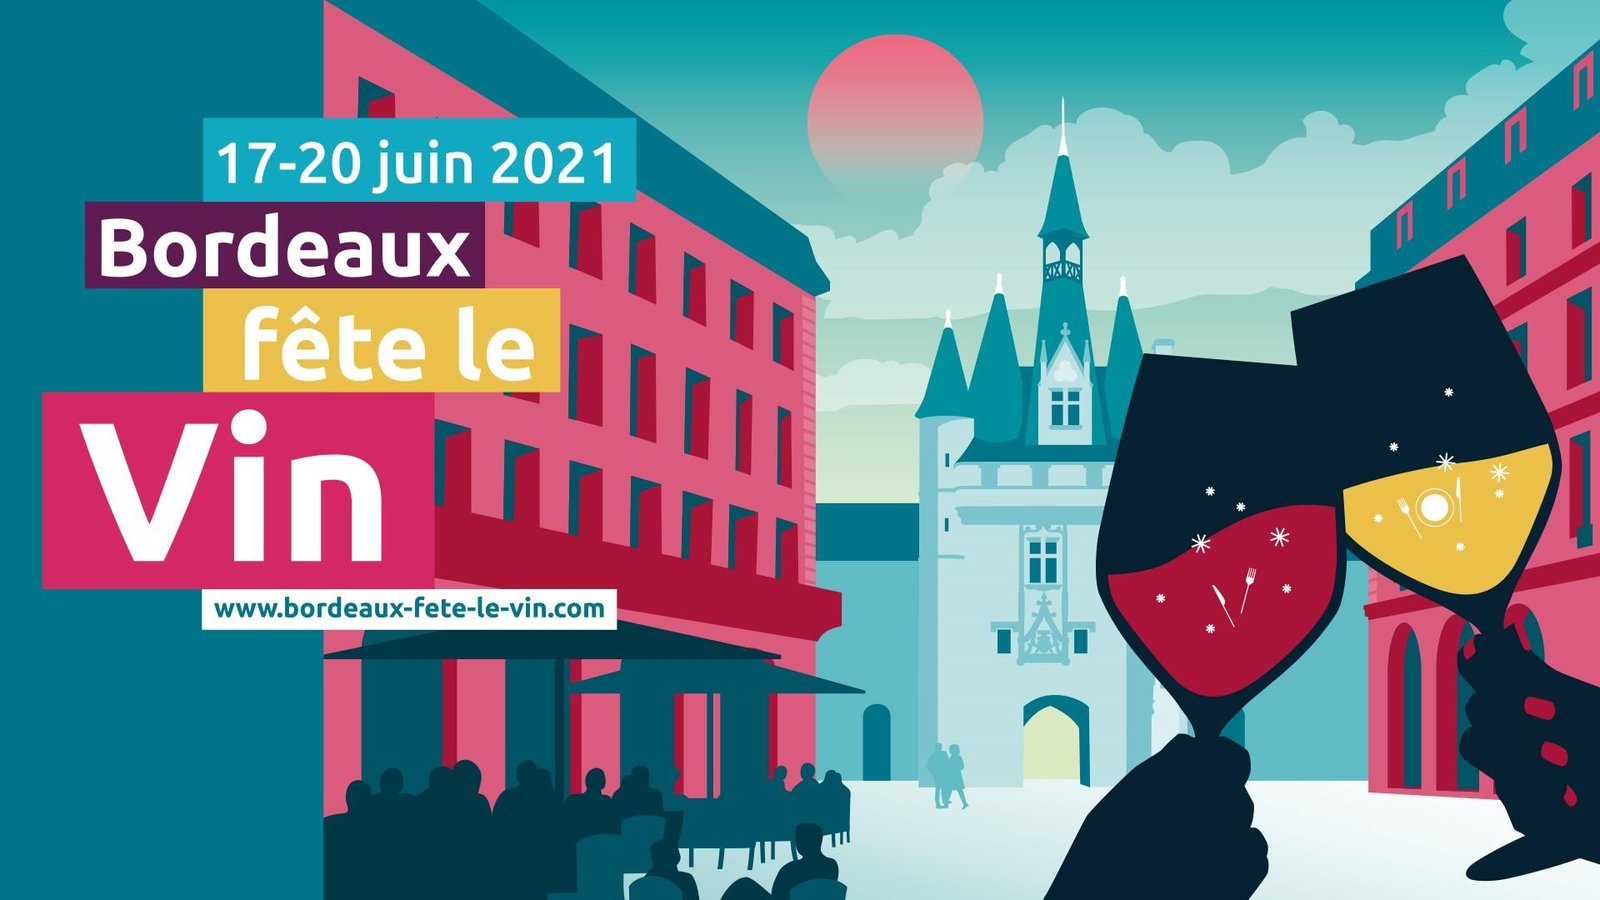 Bordeaux celebrates Wine: the 2021 edition of Bordeaux Wine Festival -  